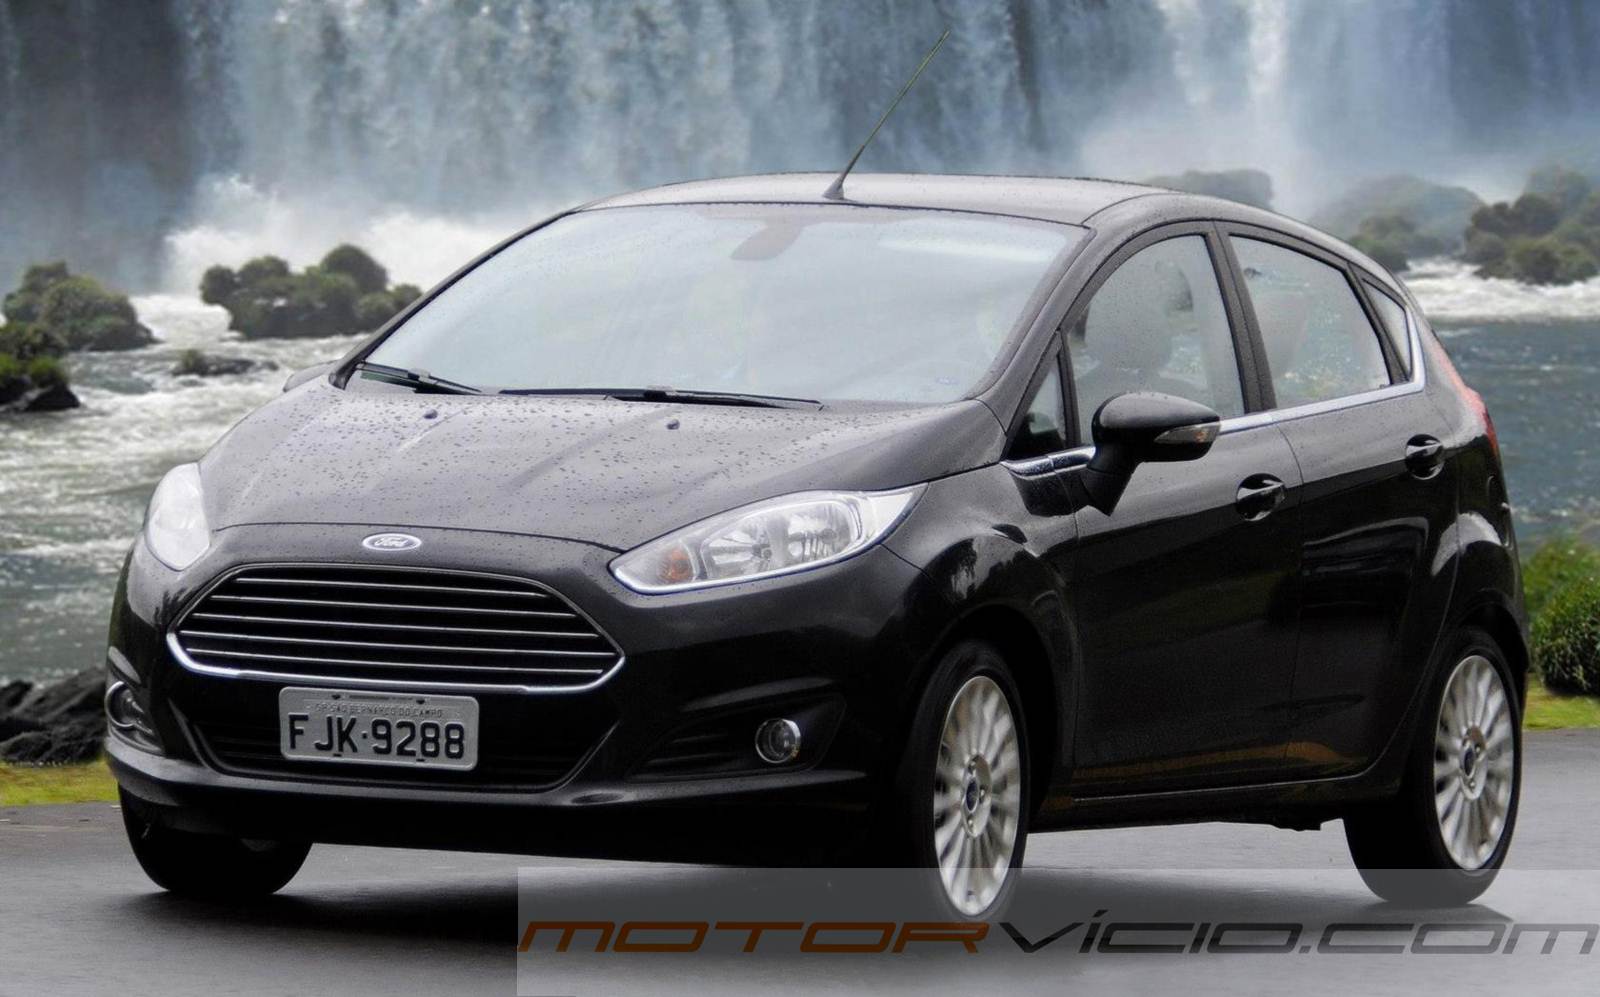 Mua Bán Xe Ford Fiesta 2014 Giá Rẻ Toàn quốc